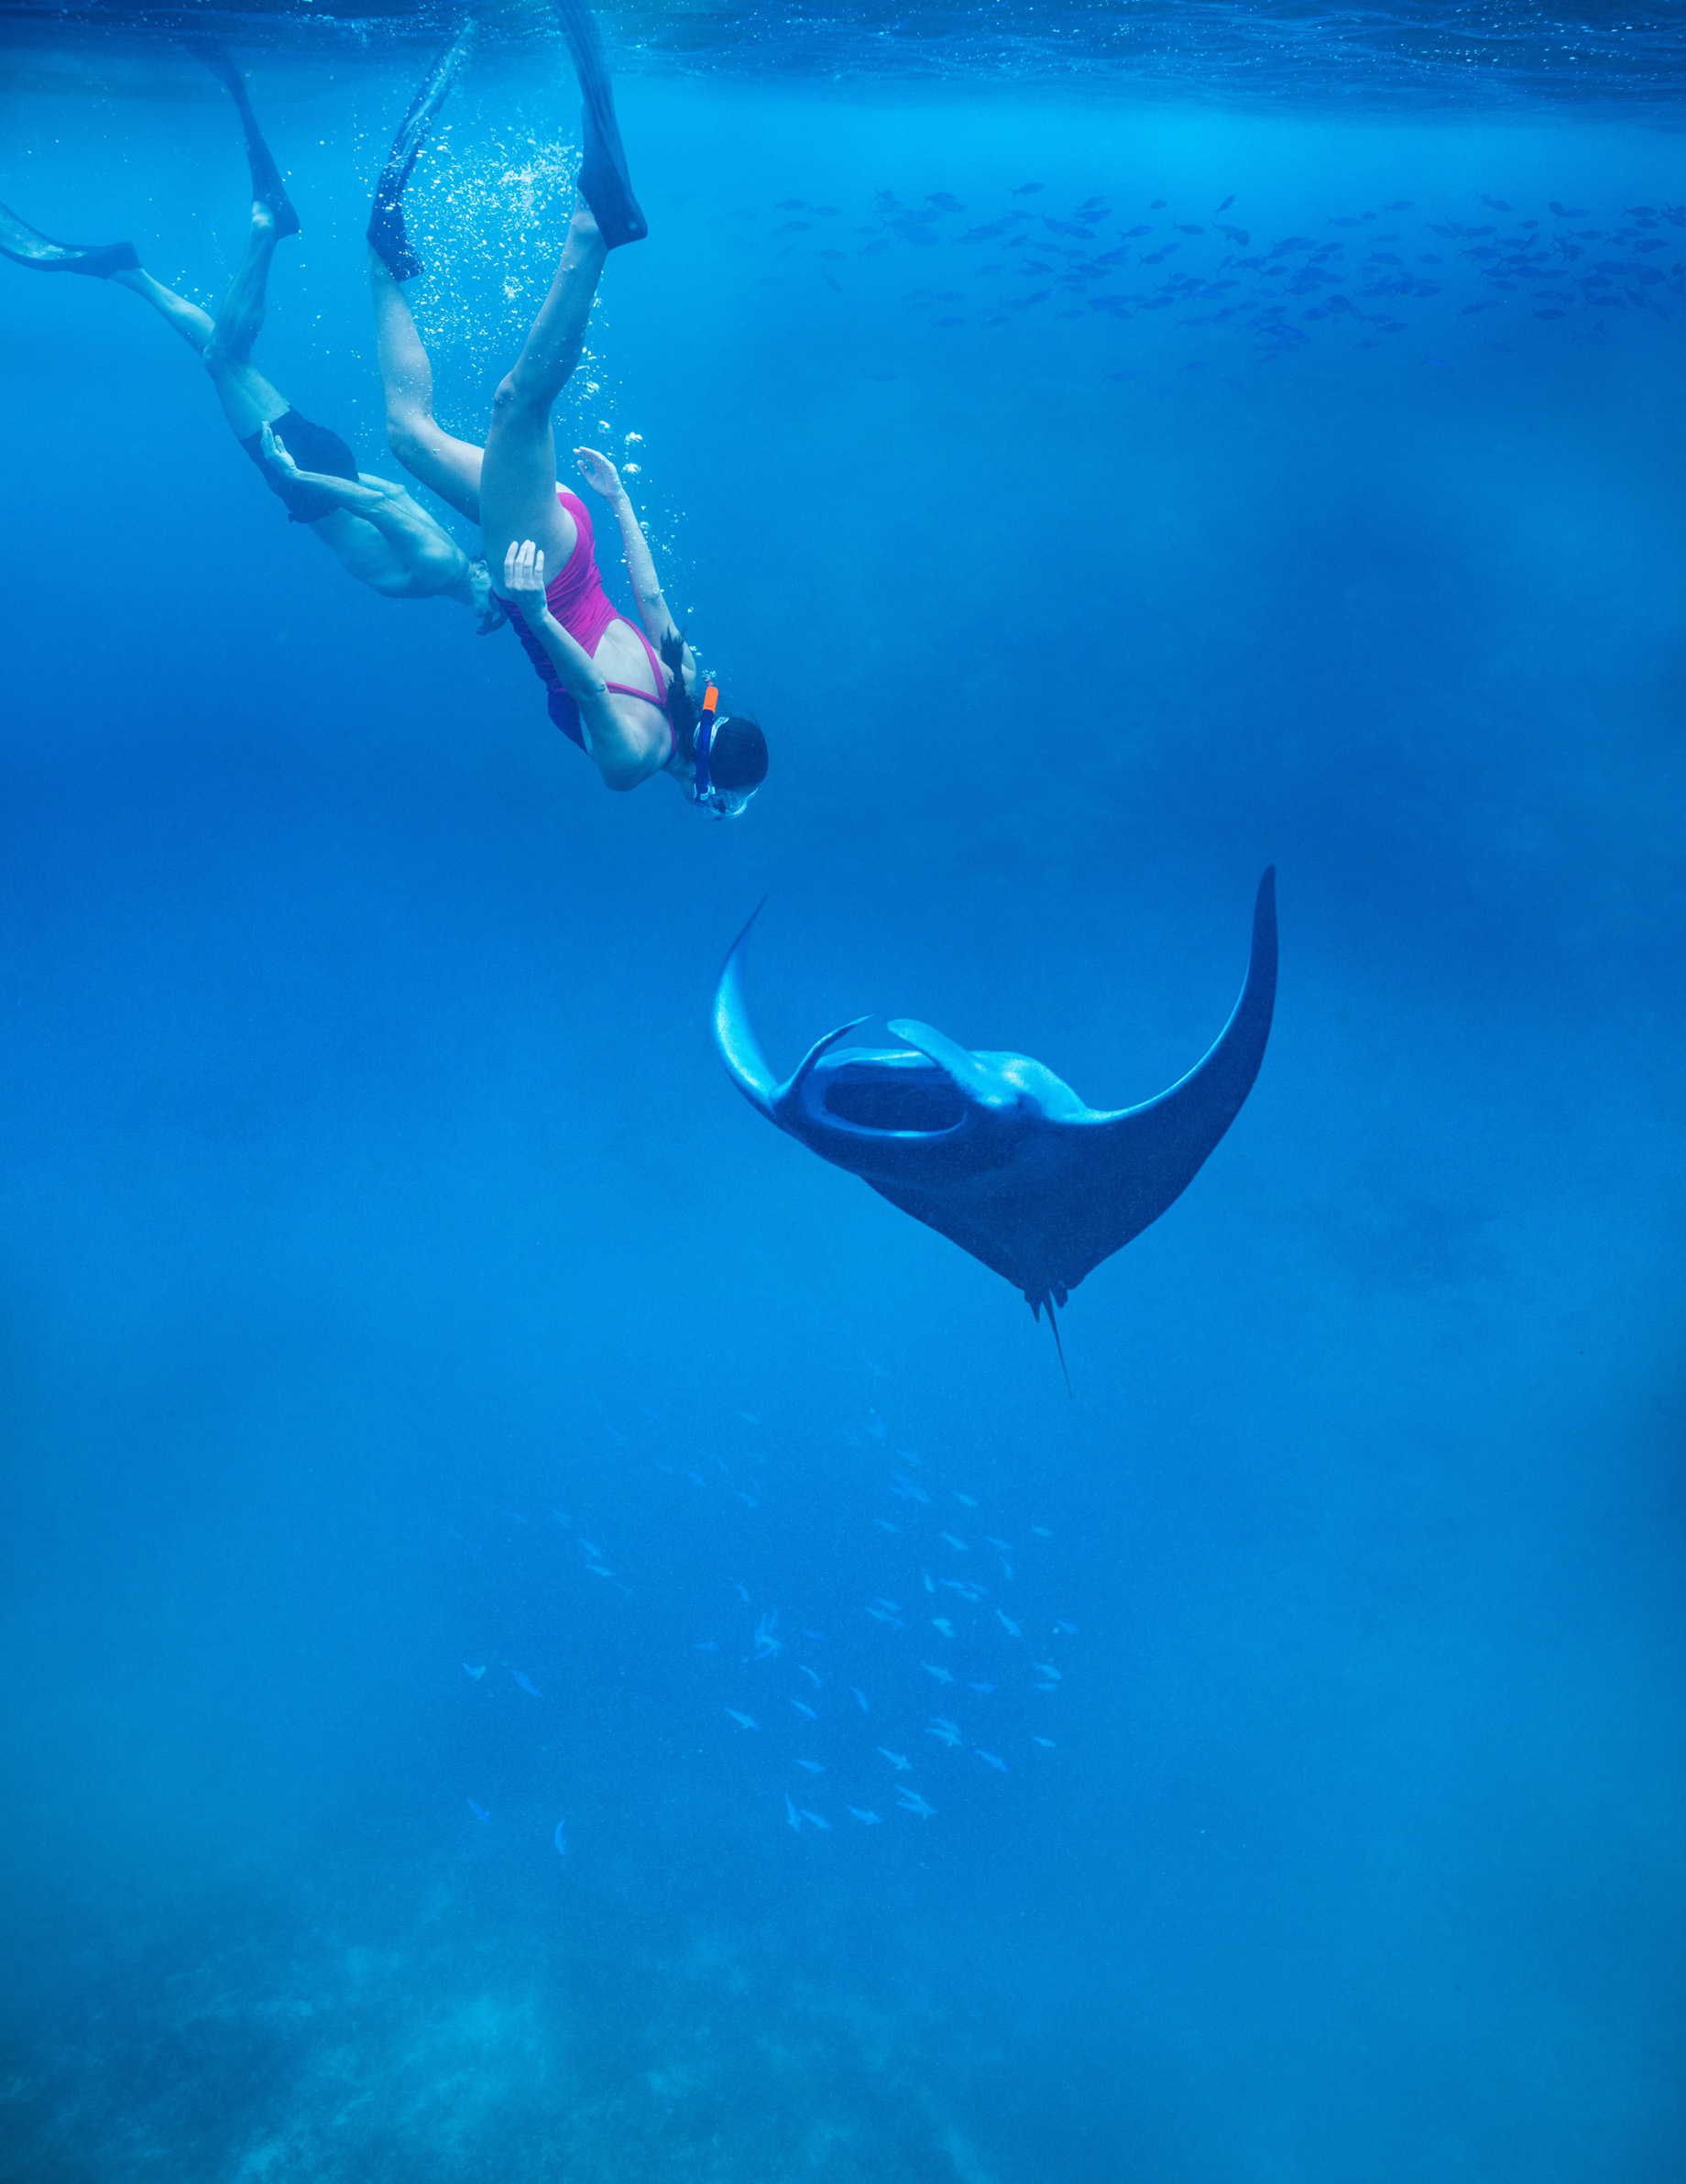 Anantara Kihavah Maldives Villas Resort – Baa Atoll, Maldives – Manta Ray Snorkelling